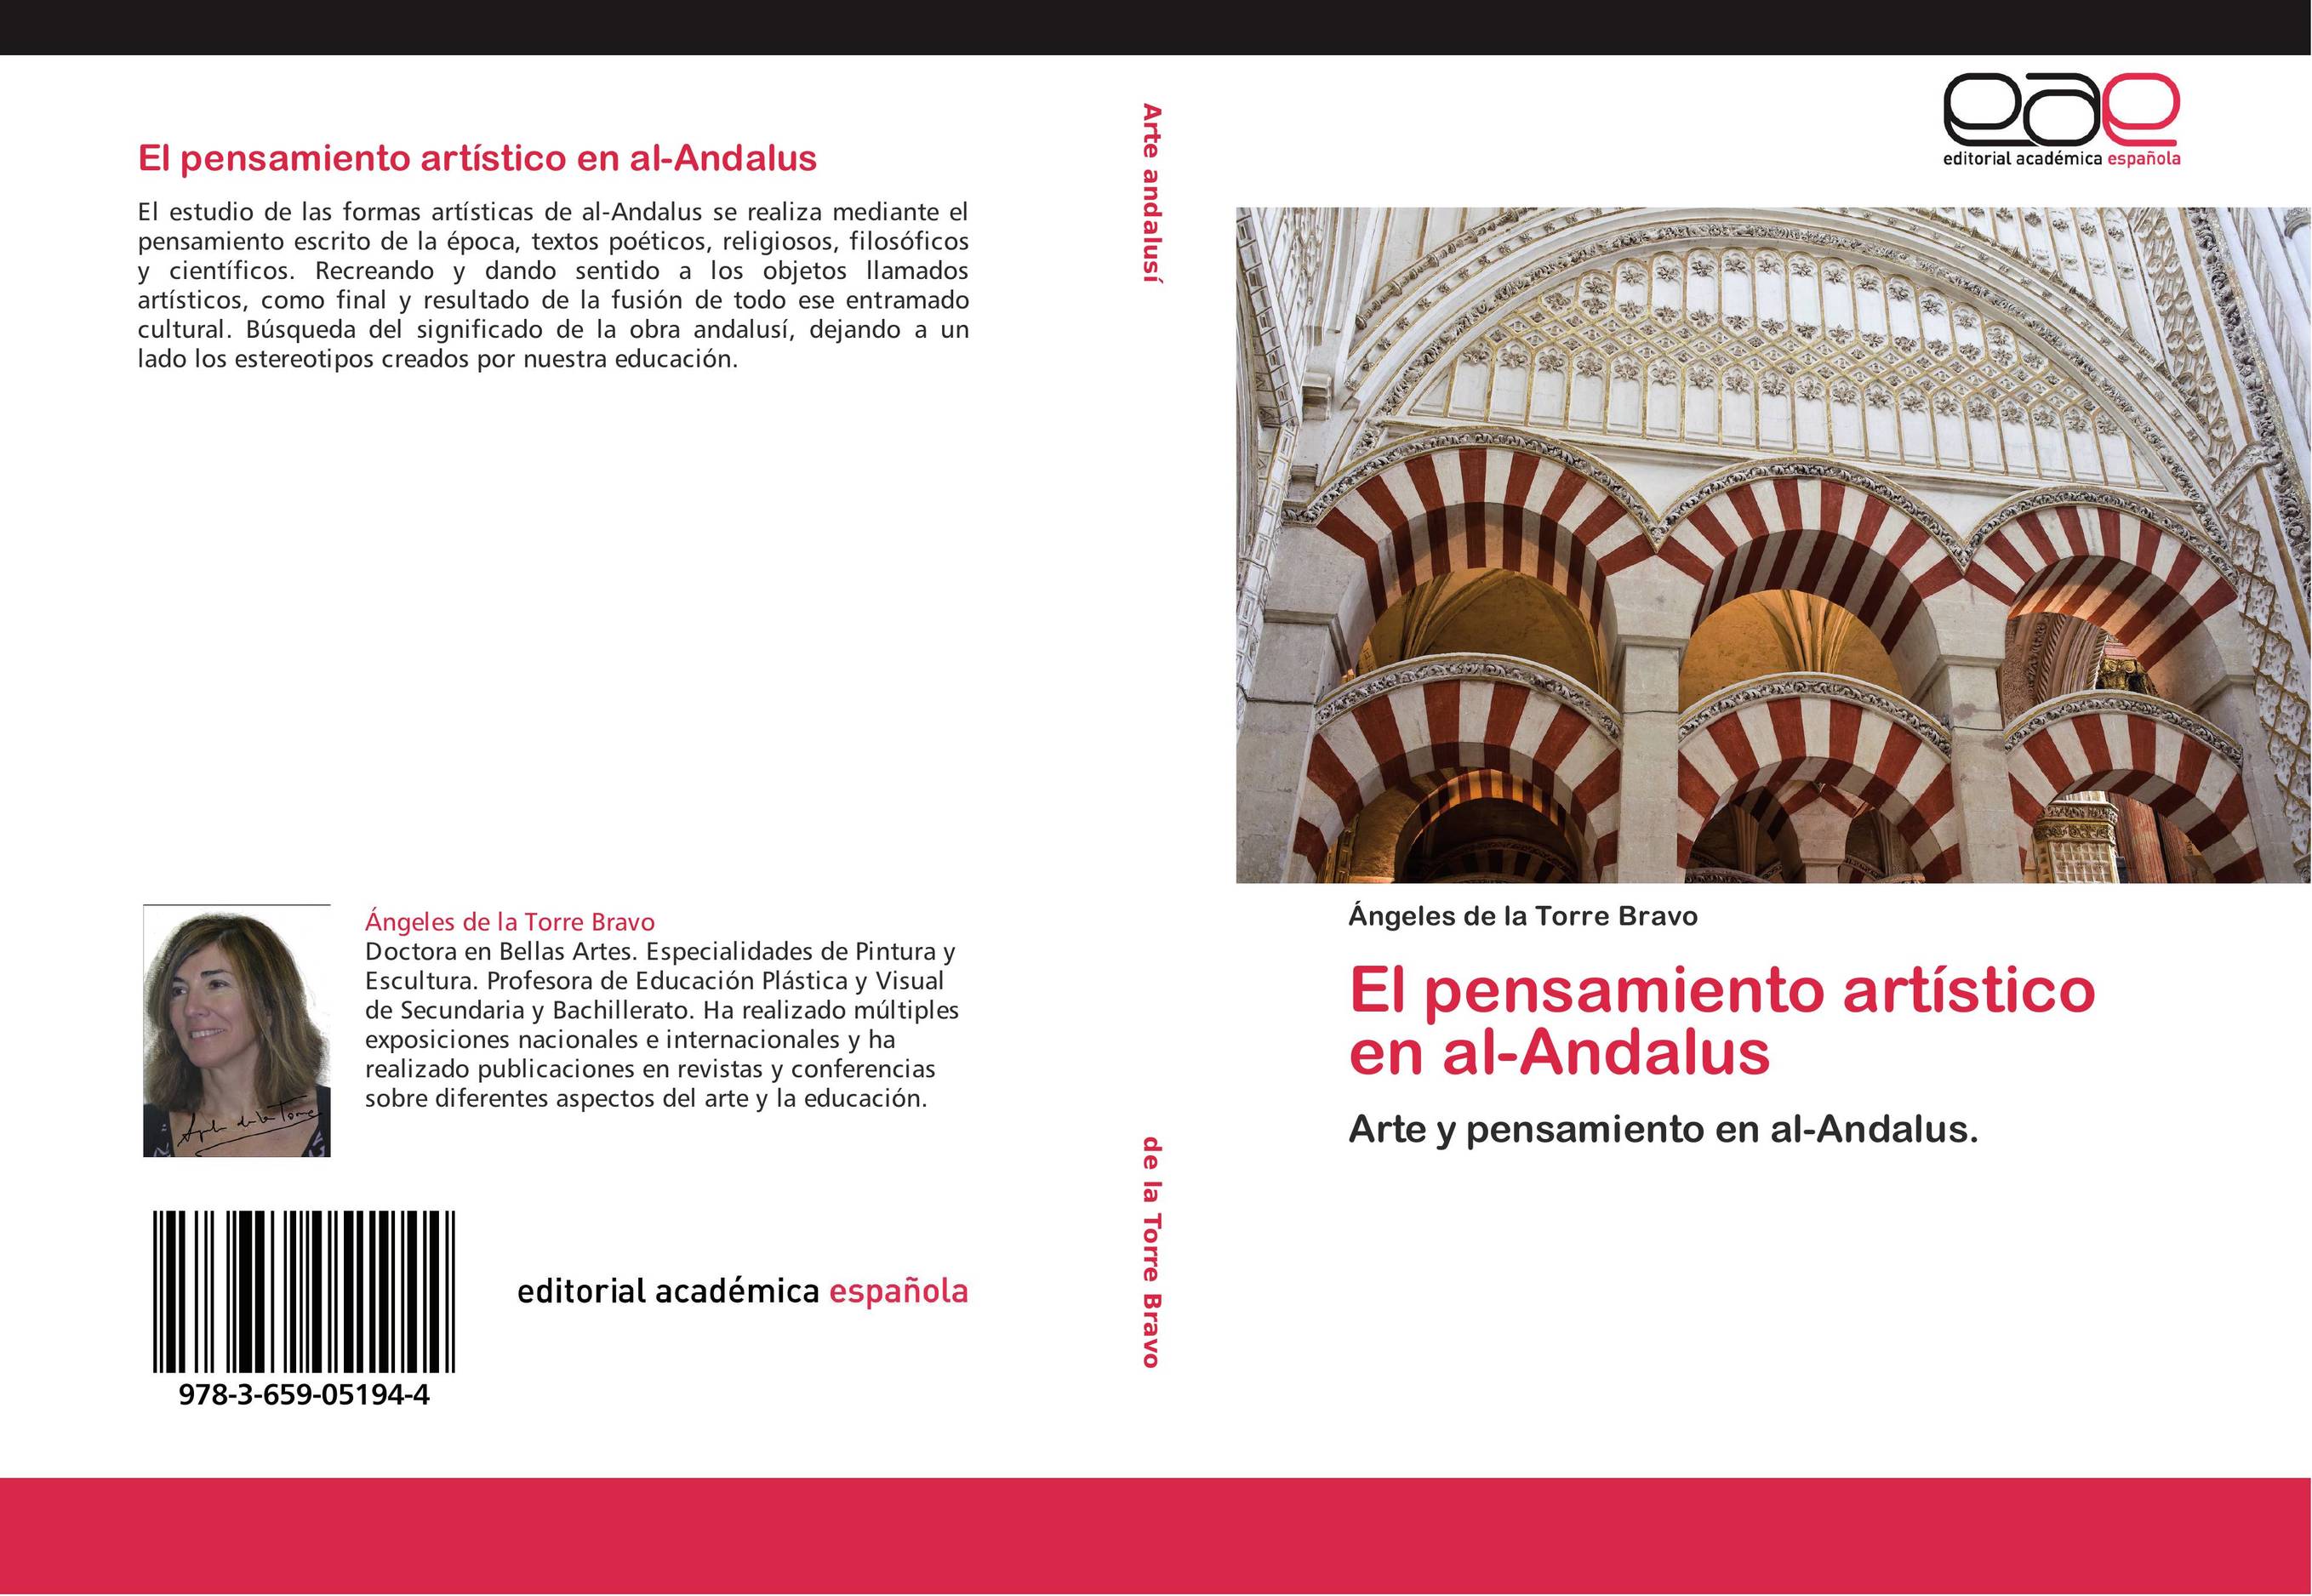 El pensamiento artístico en al-Andalus